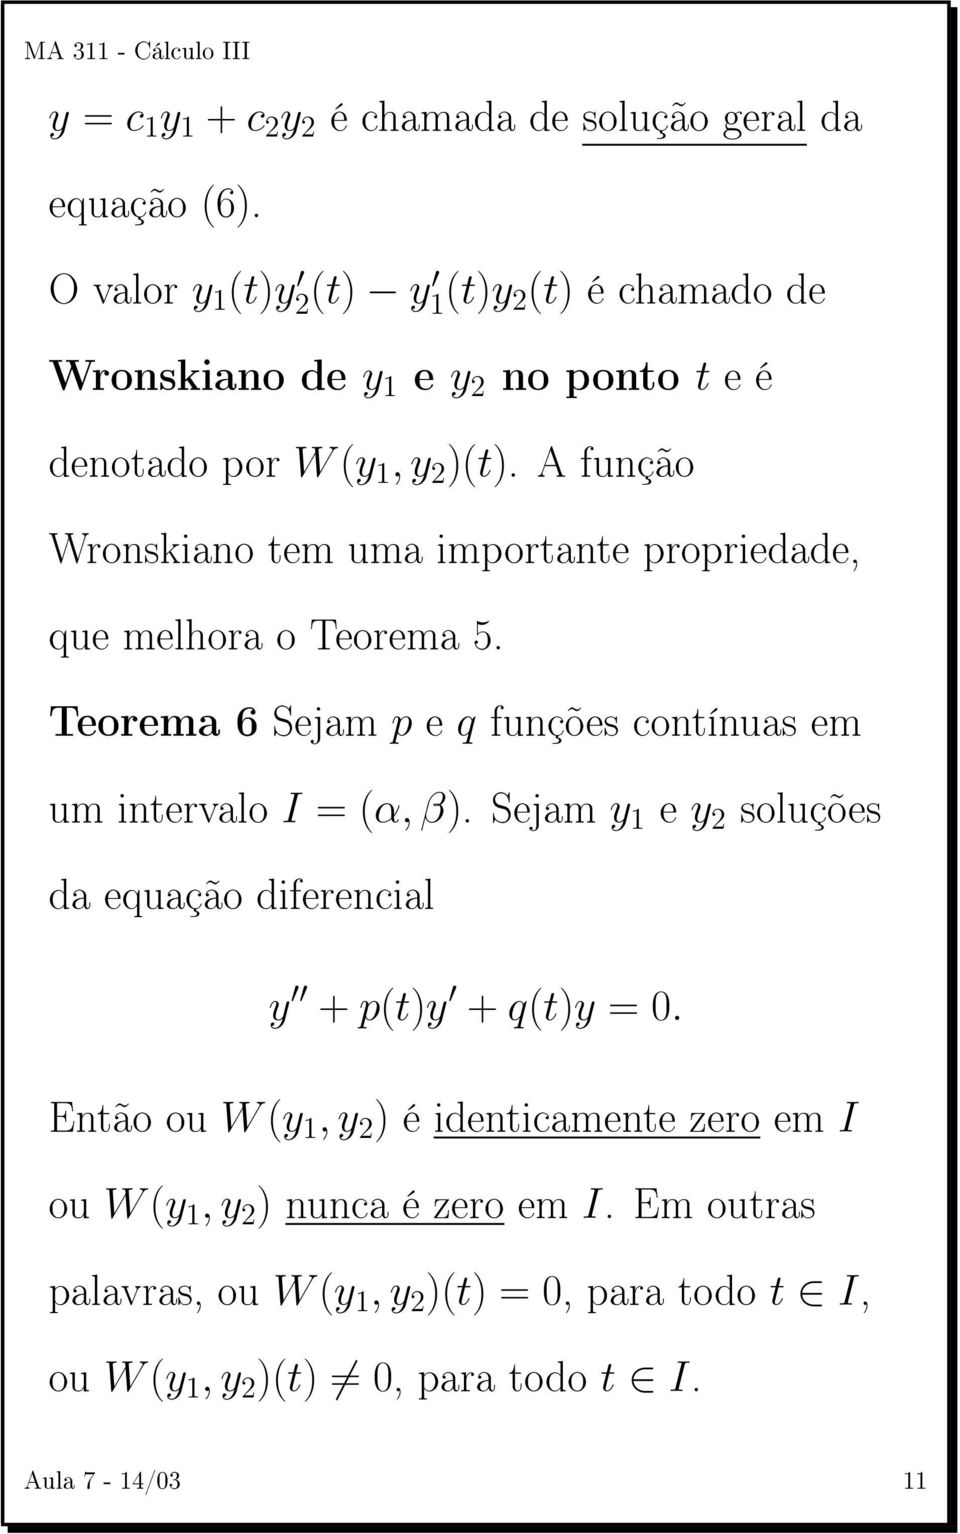 A função Wronskiano tem uma importante propriedade, que melhora o Teorema 5. Teorema 6 Sejam p e q funções contínuas em um intervalo I = (α, β).